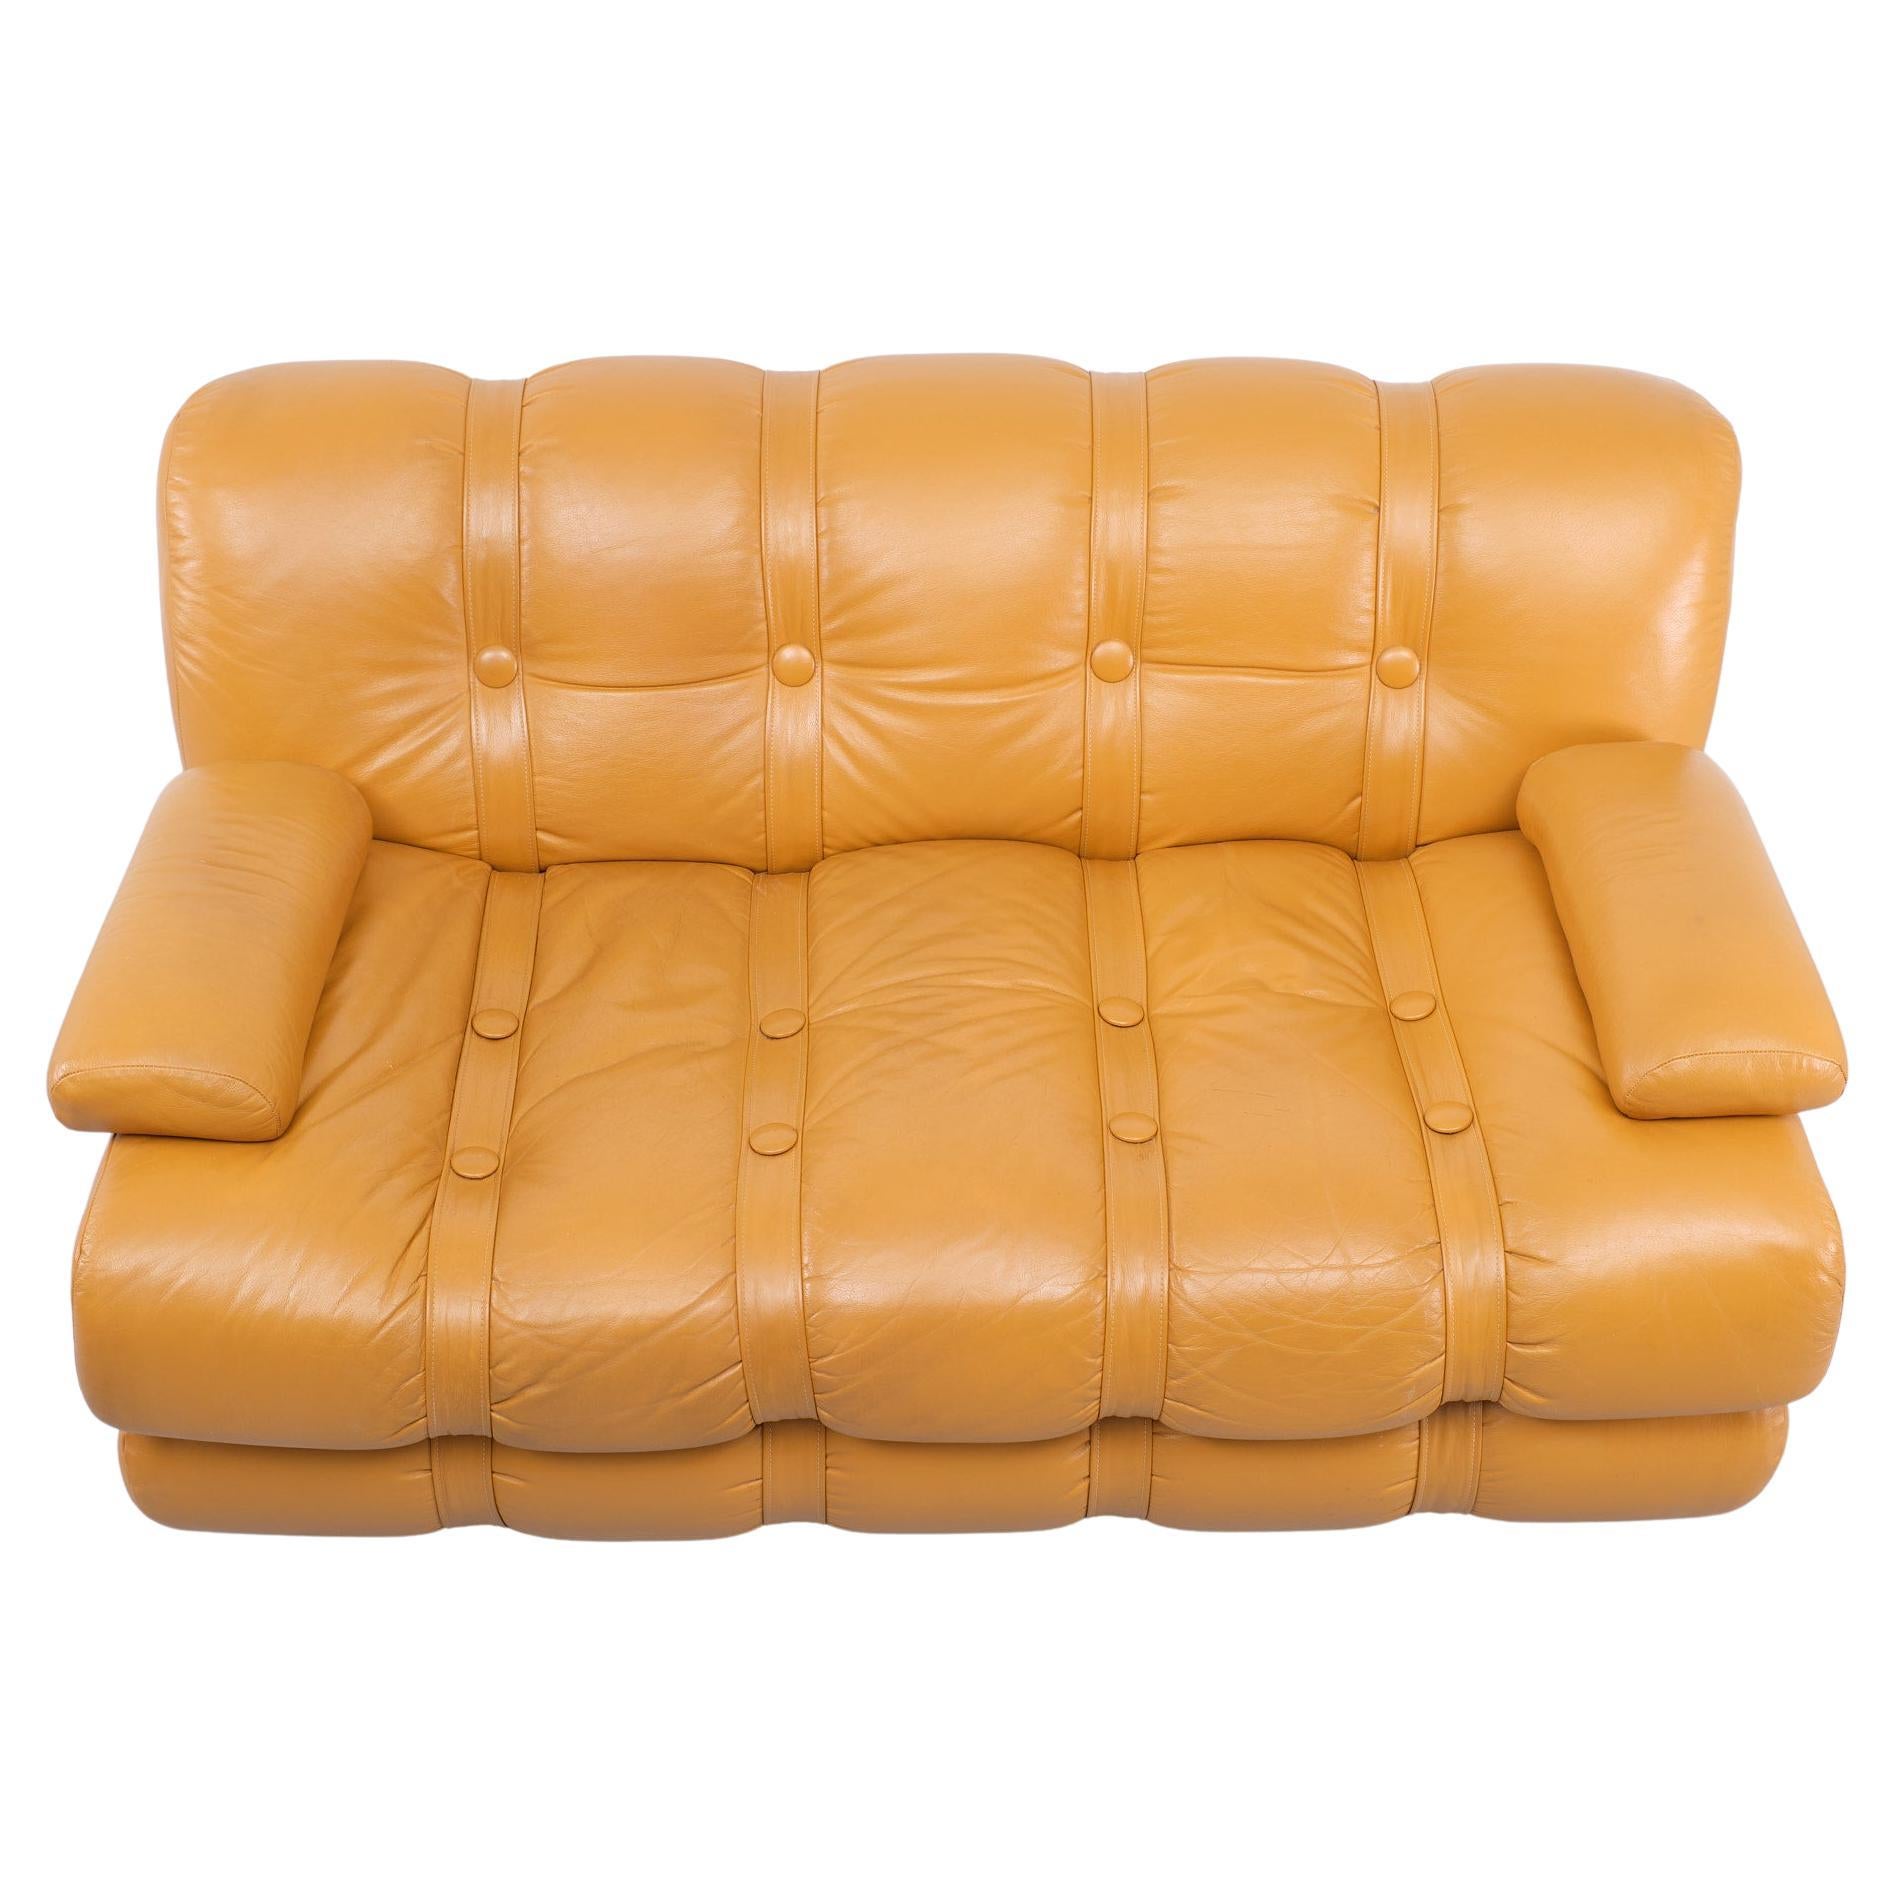 1970s sofa styles